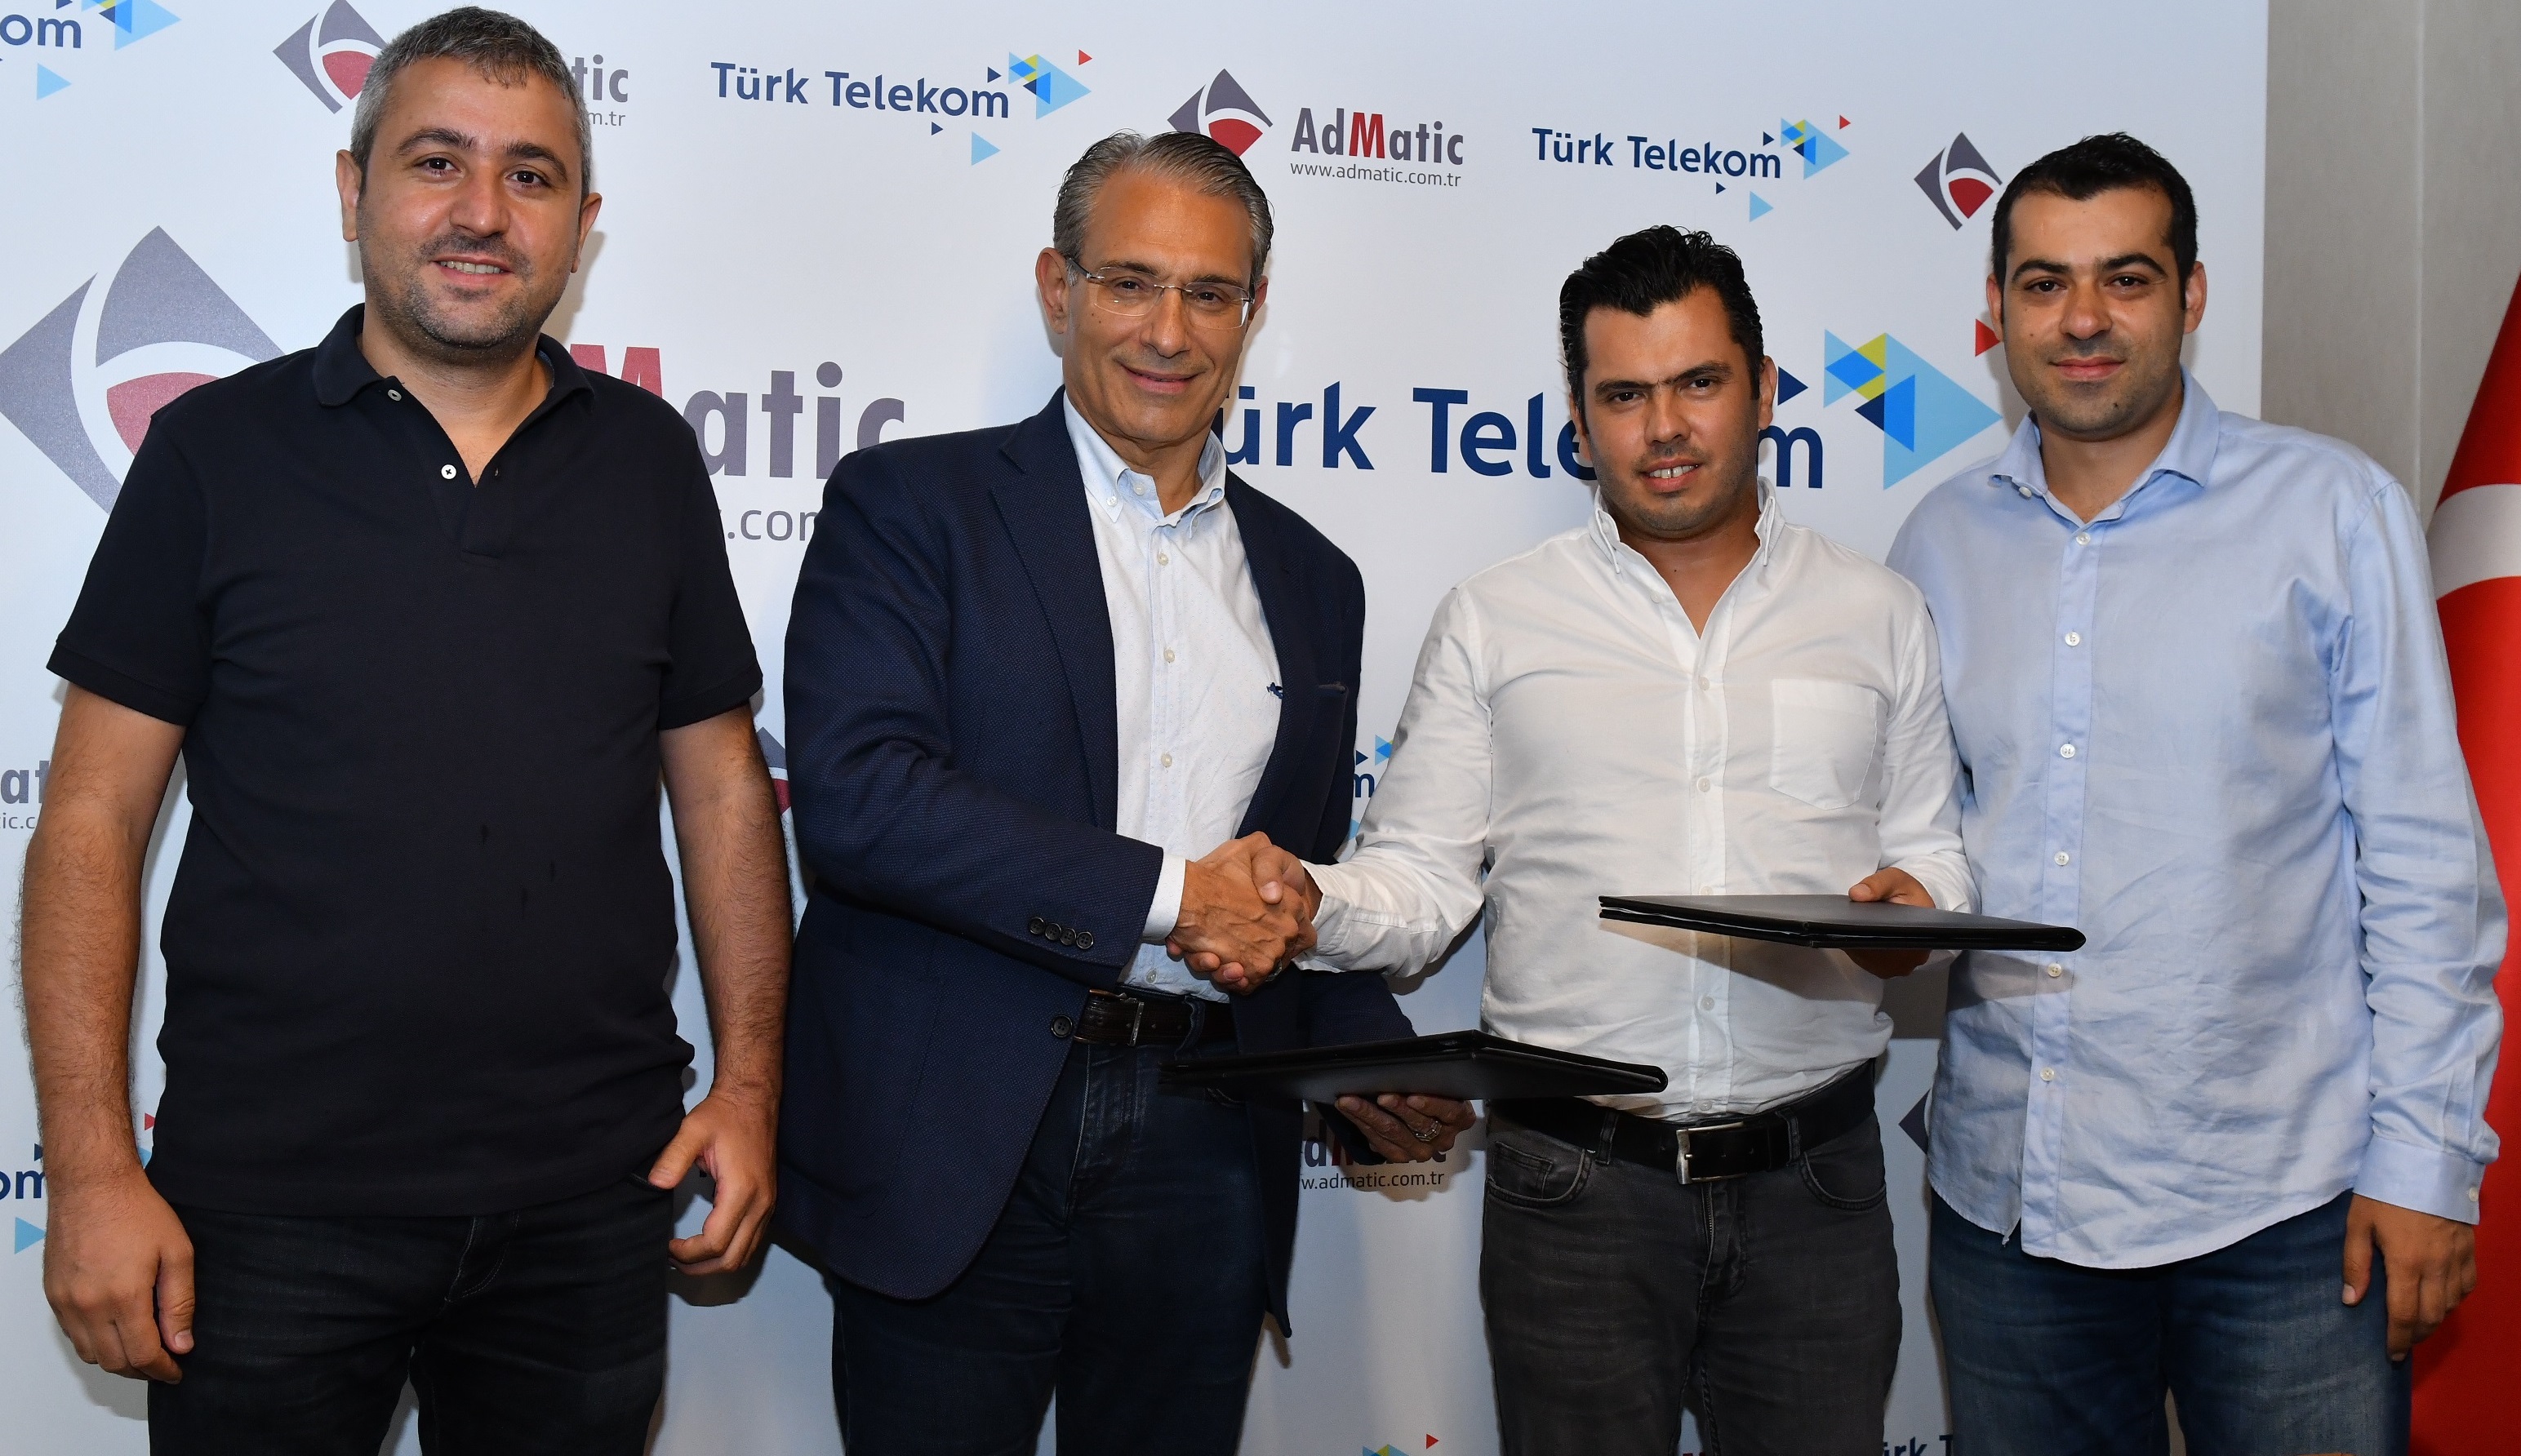 Türk Telekom dijital reklamlarında artık yerli ve milli çözümler kullanacak 